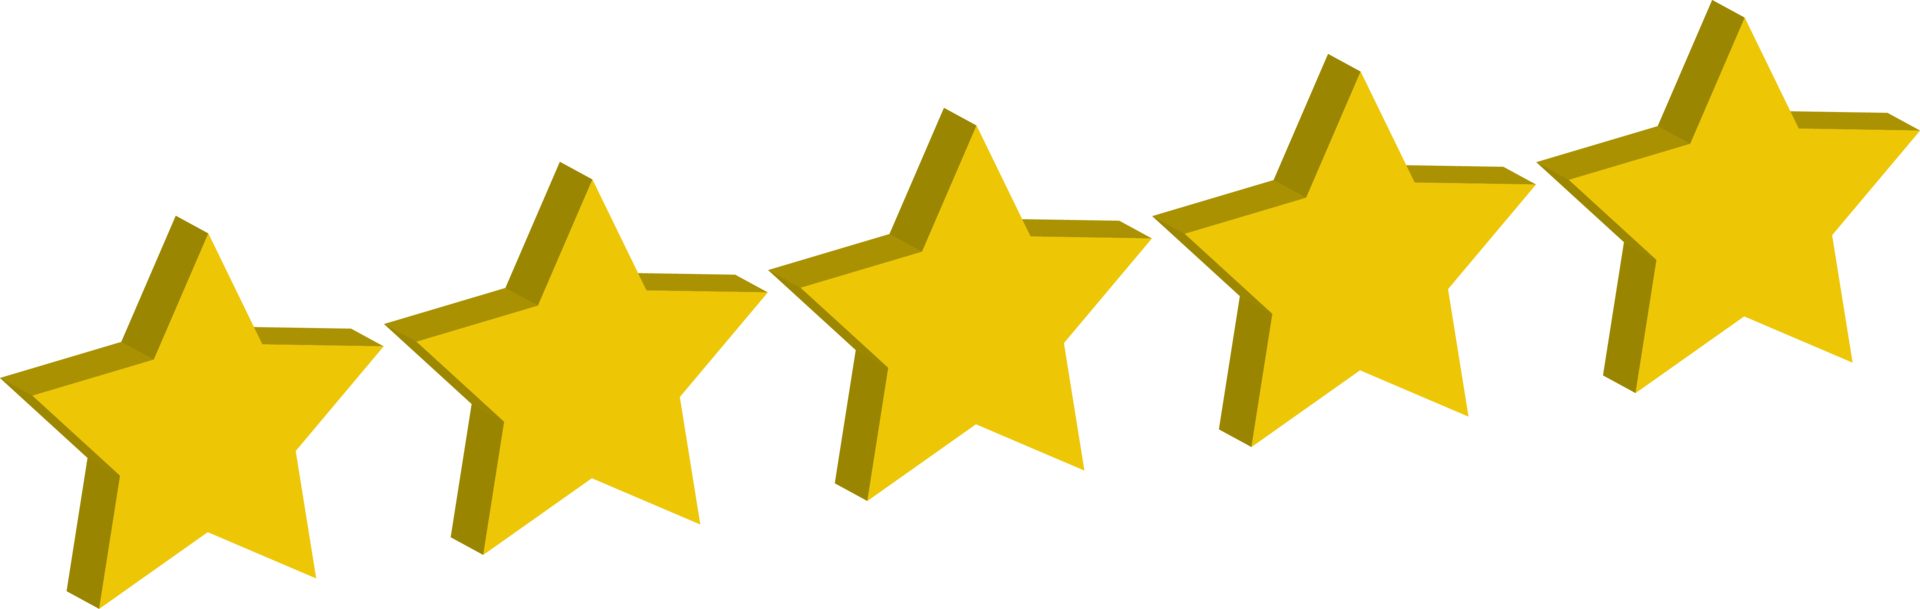 5 estrelas classificação de revisão de ouro amarelo 3d png